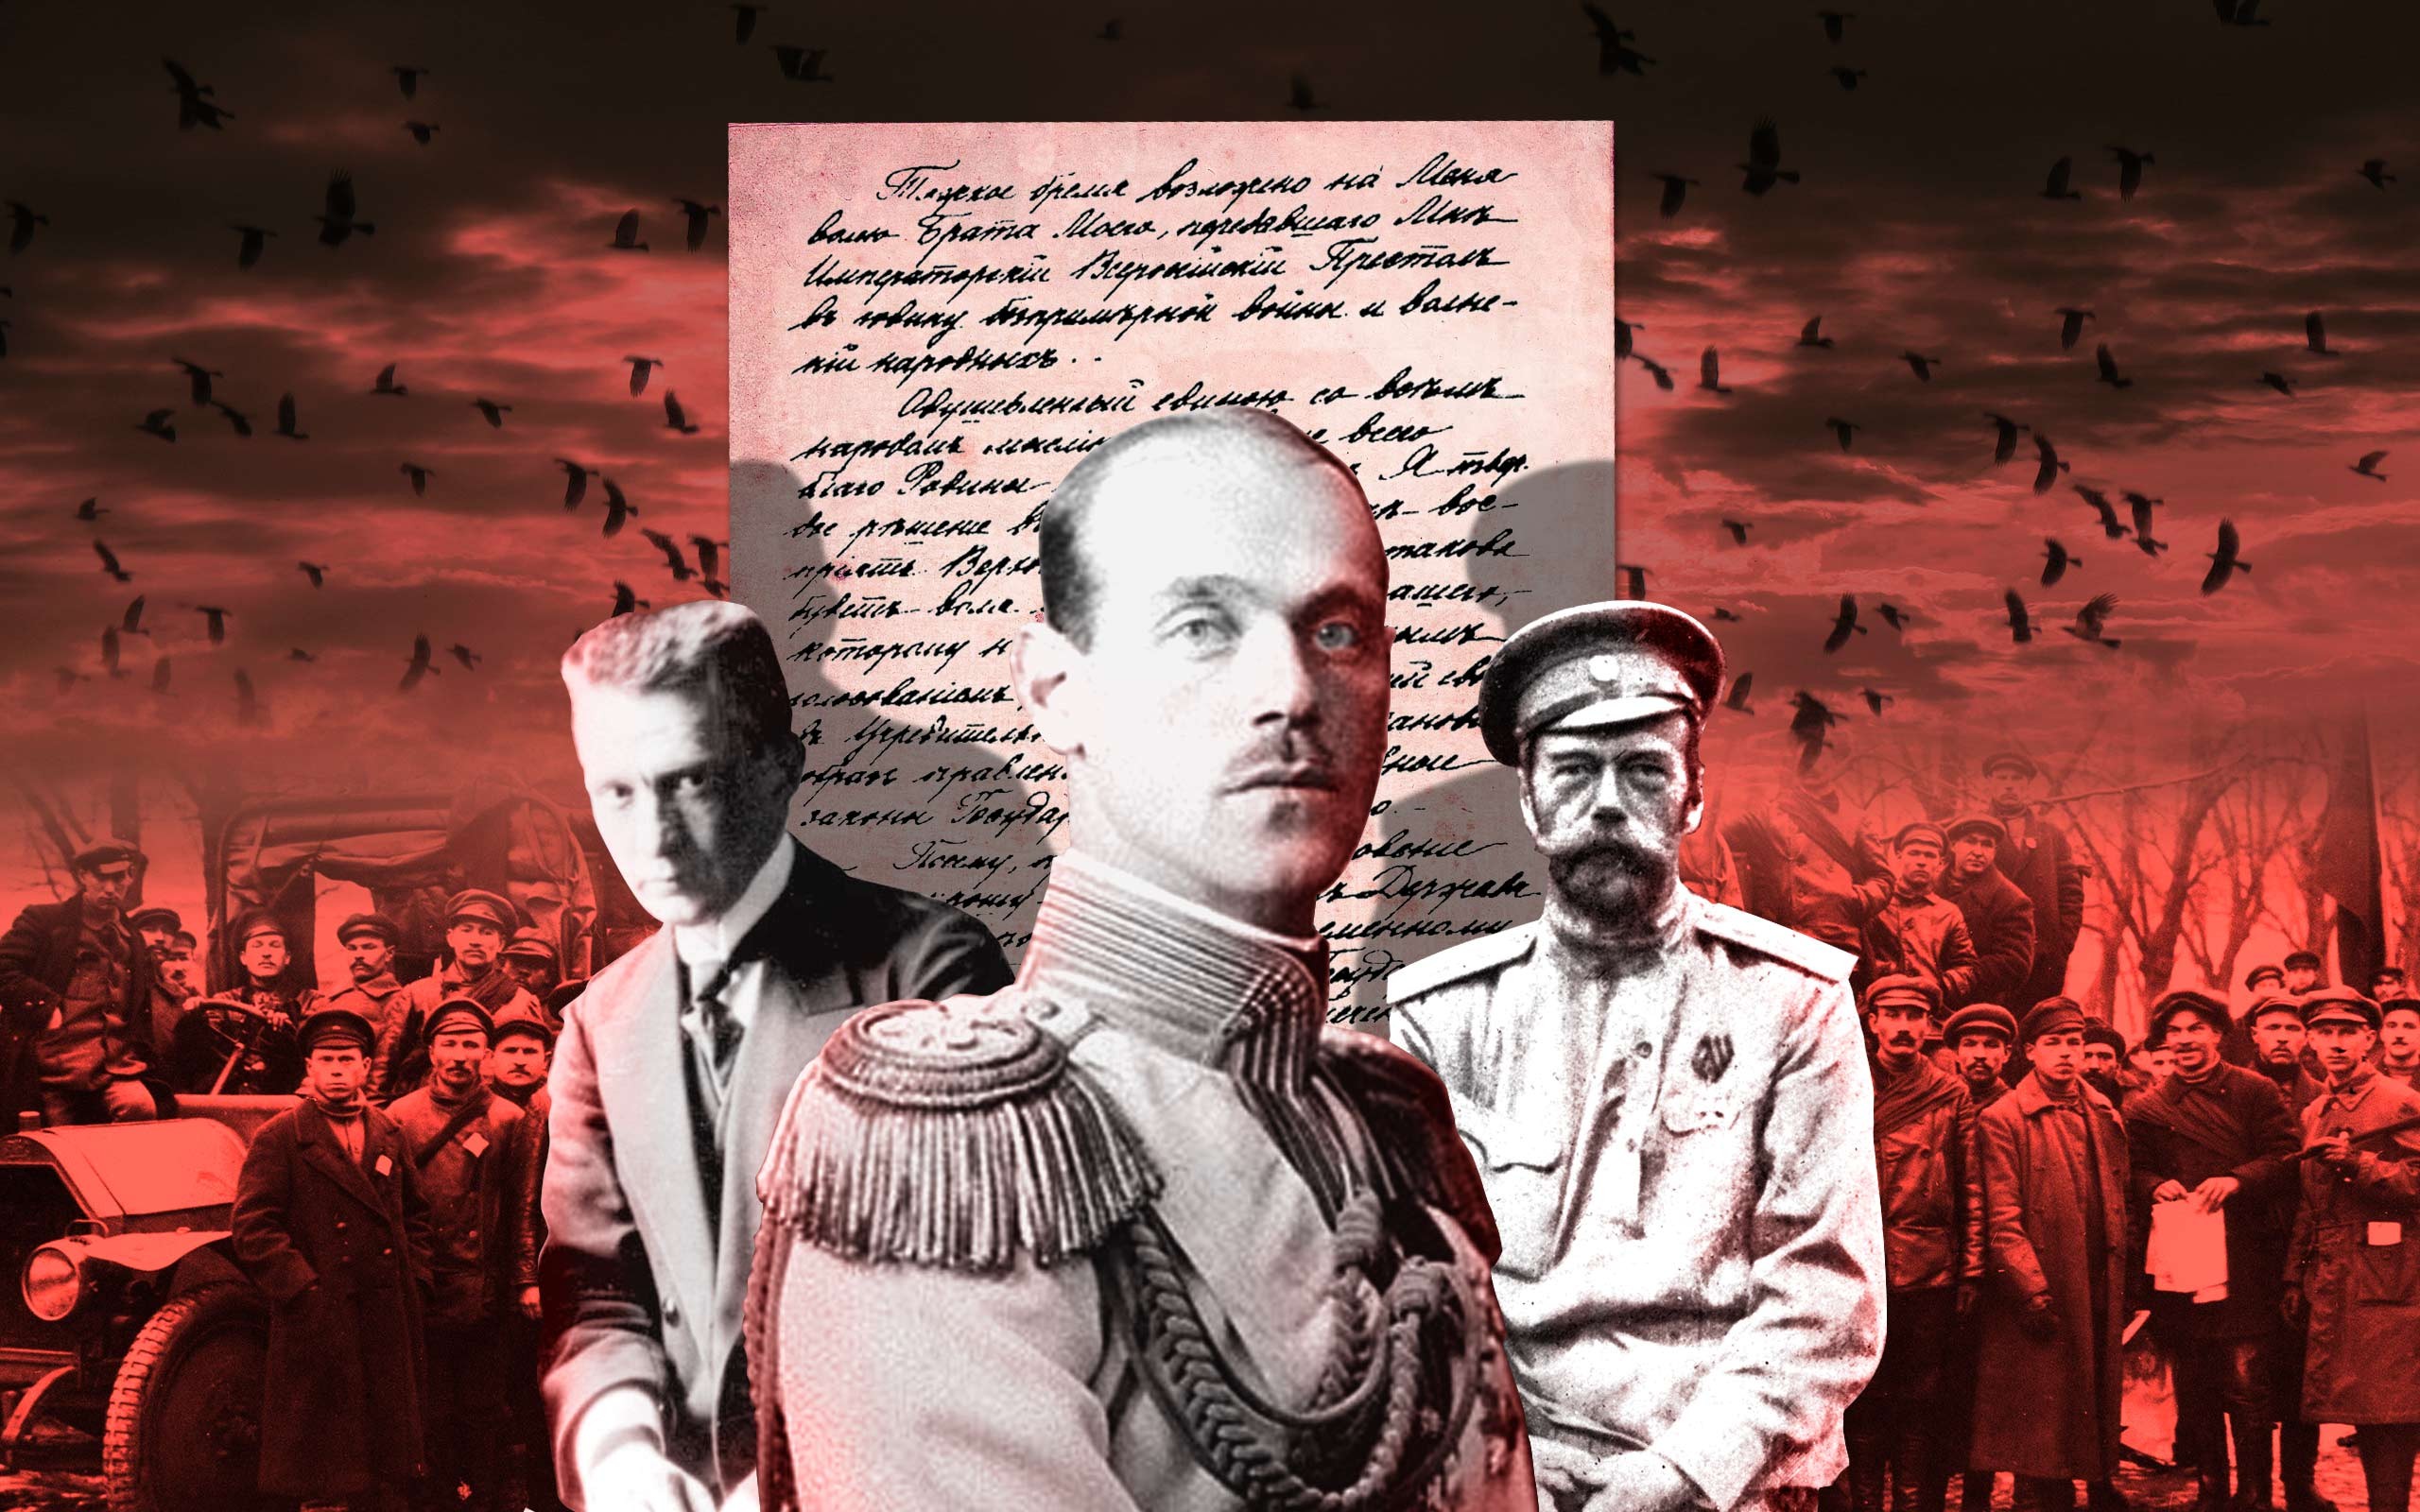 15 Марта 1917 Николай 2 отрекся от престола